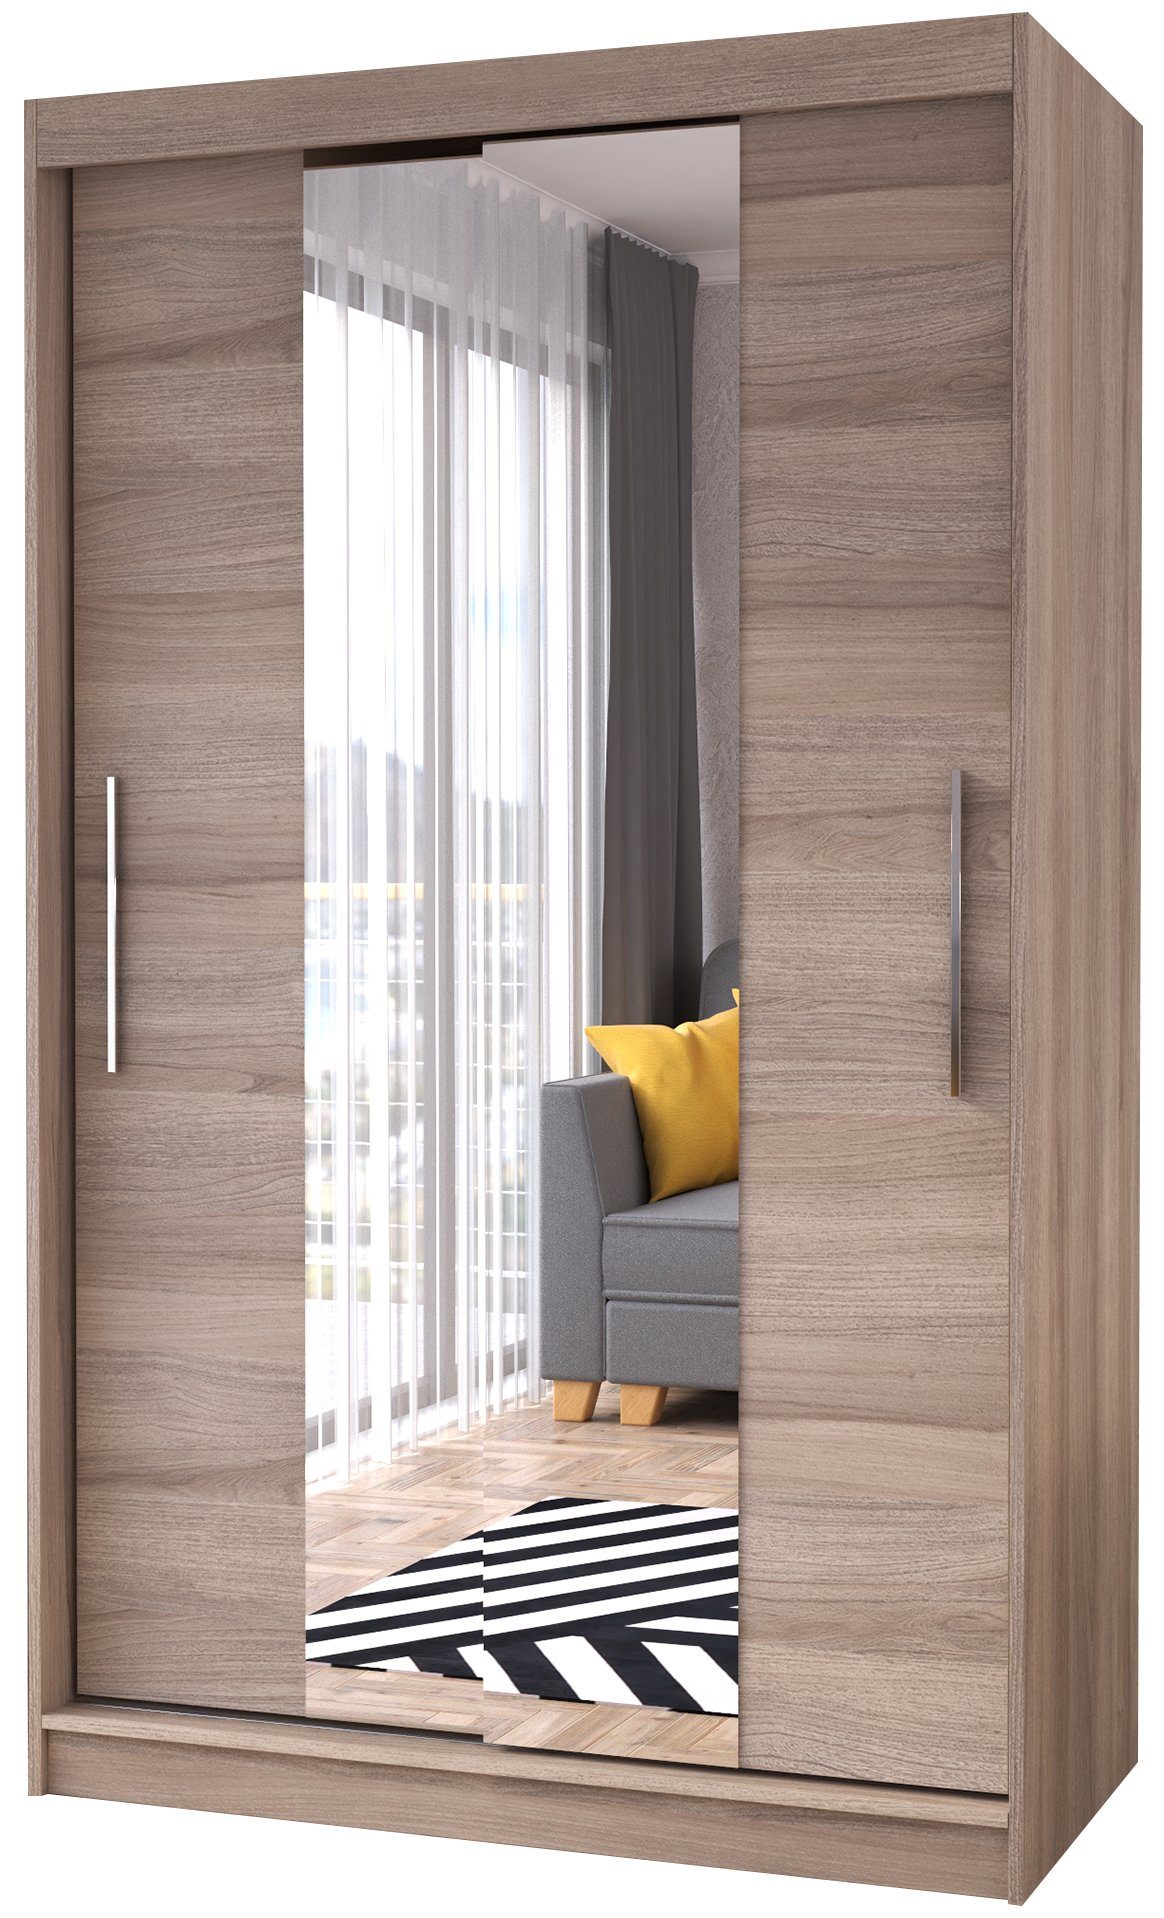 Polini Home Schwebetürenschrank Schwebetürenschrank Prime Comfort 120x200 Spiegel mittig Eichenholzo mit Spiegel eiche (mittelspiegel) | Eiche (Mittelspiegel)